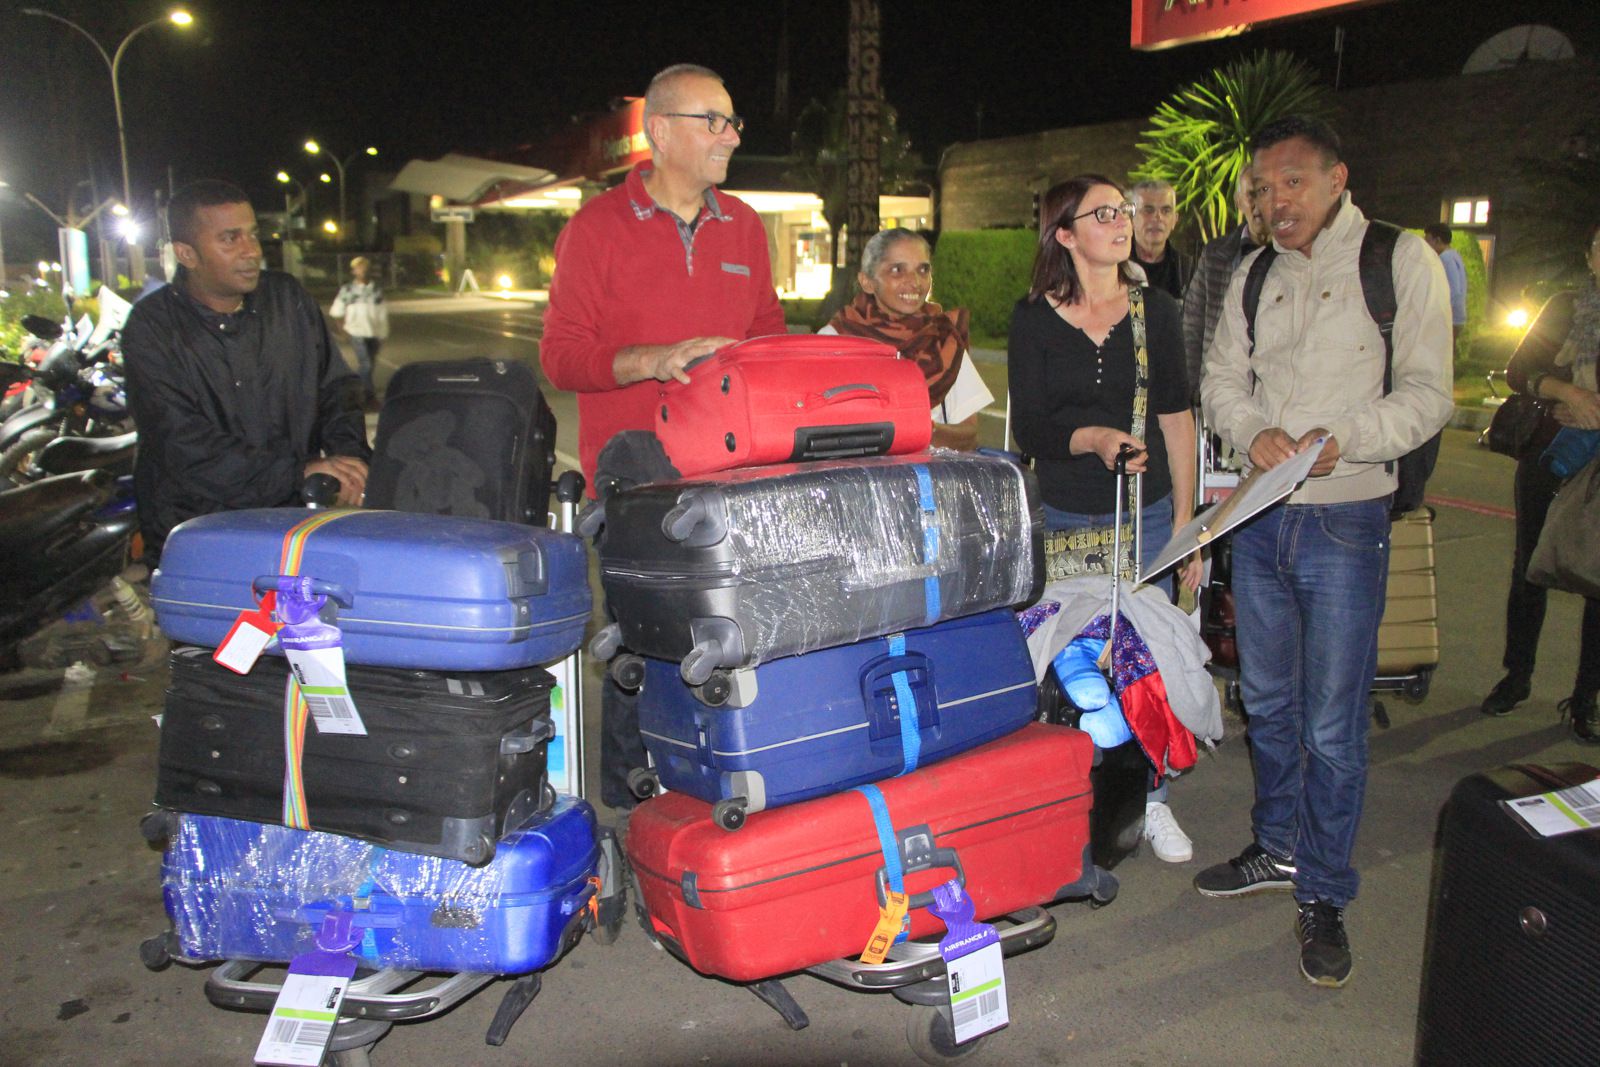 A l'arrivée à Tananarive, beaucoup d'humanitaire dans nos bagages.